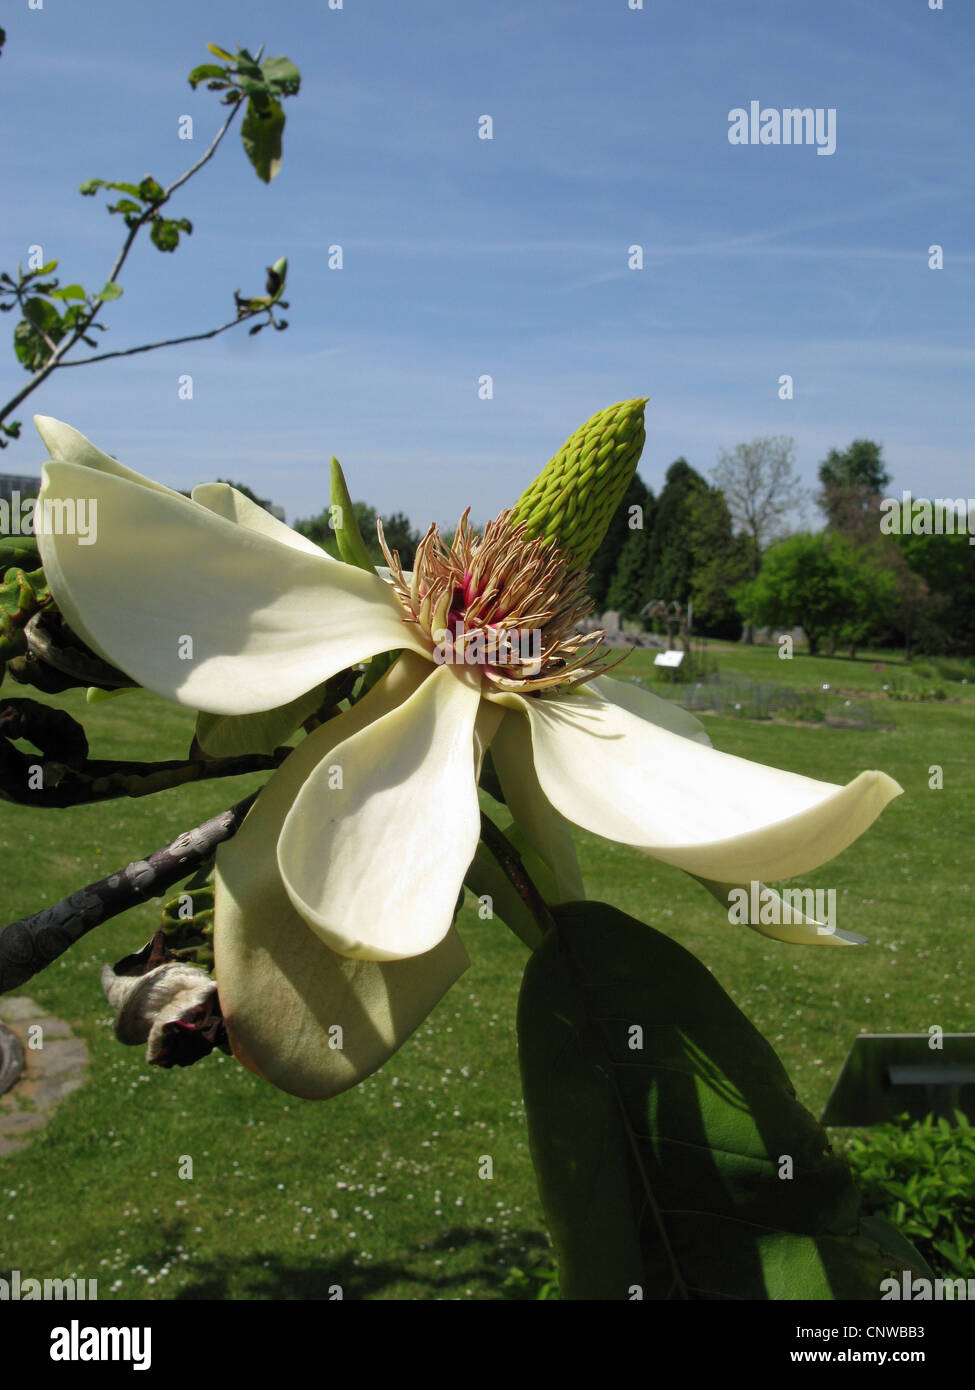 Japanese Bigleaf Magnolia, Japanese whitebark magnolia (Magnolia obovata, Magnolia hypoleuca), flower Stock Photo